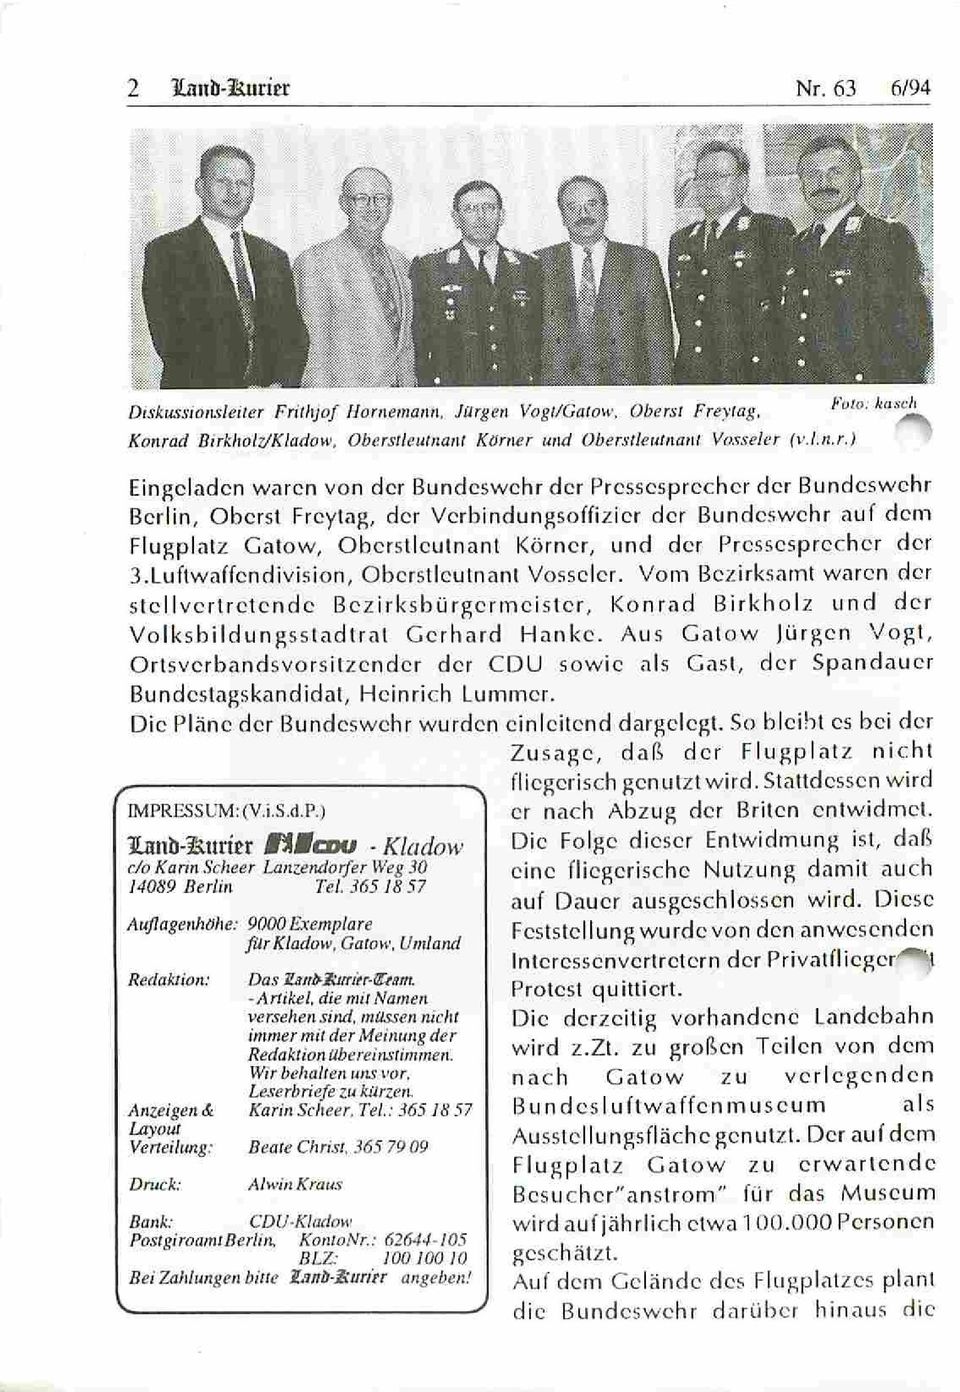 Luflwaffcndivision, Oberstleutnant Vosscler. Vom Bezirksamt waren der stellvertretende ßczirksbürgcrmcislcr, Konrad Birkholz und der Volksbildungsstadtral Gerhard Hanke.